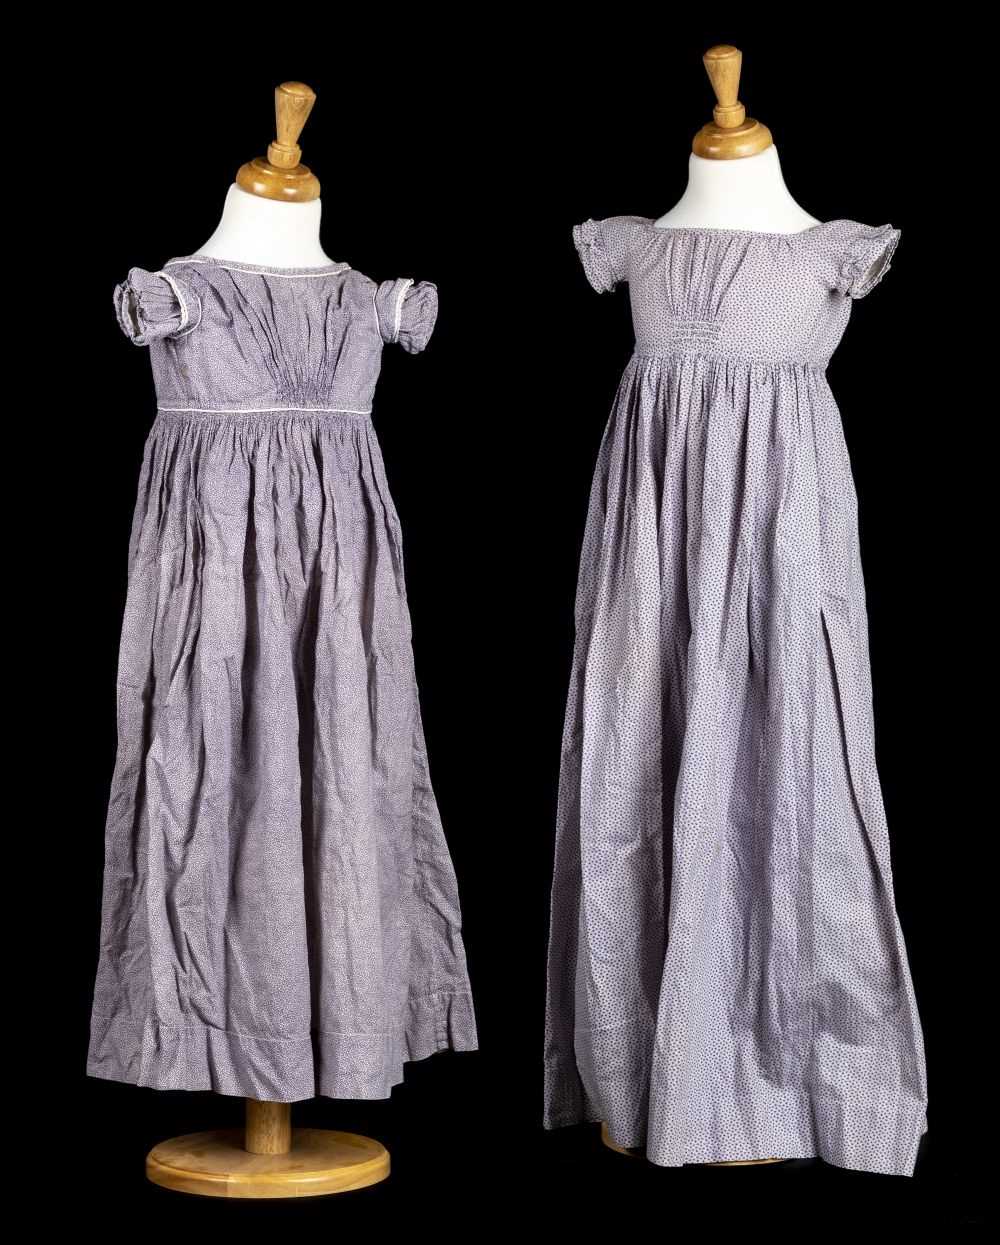 Lot 141 - Children's Clothes. A Regency girls' dress, circa 1810